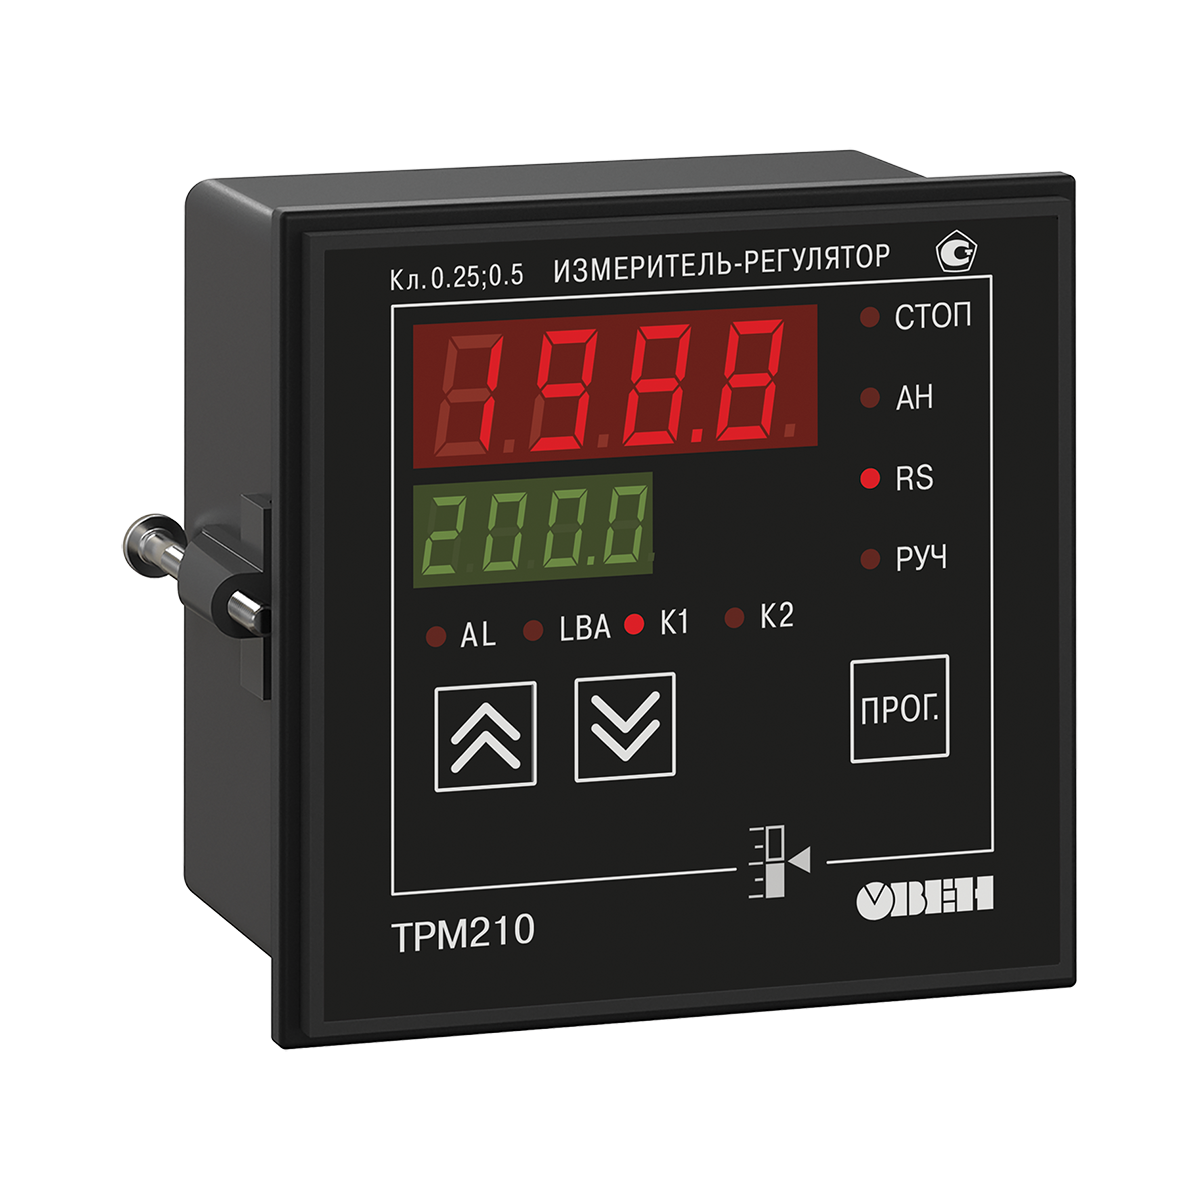 ТРМ210 ОВЕН измеритель-регулятор (ПИД-регулятор с универсальным входом и RS-485)